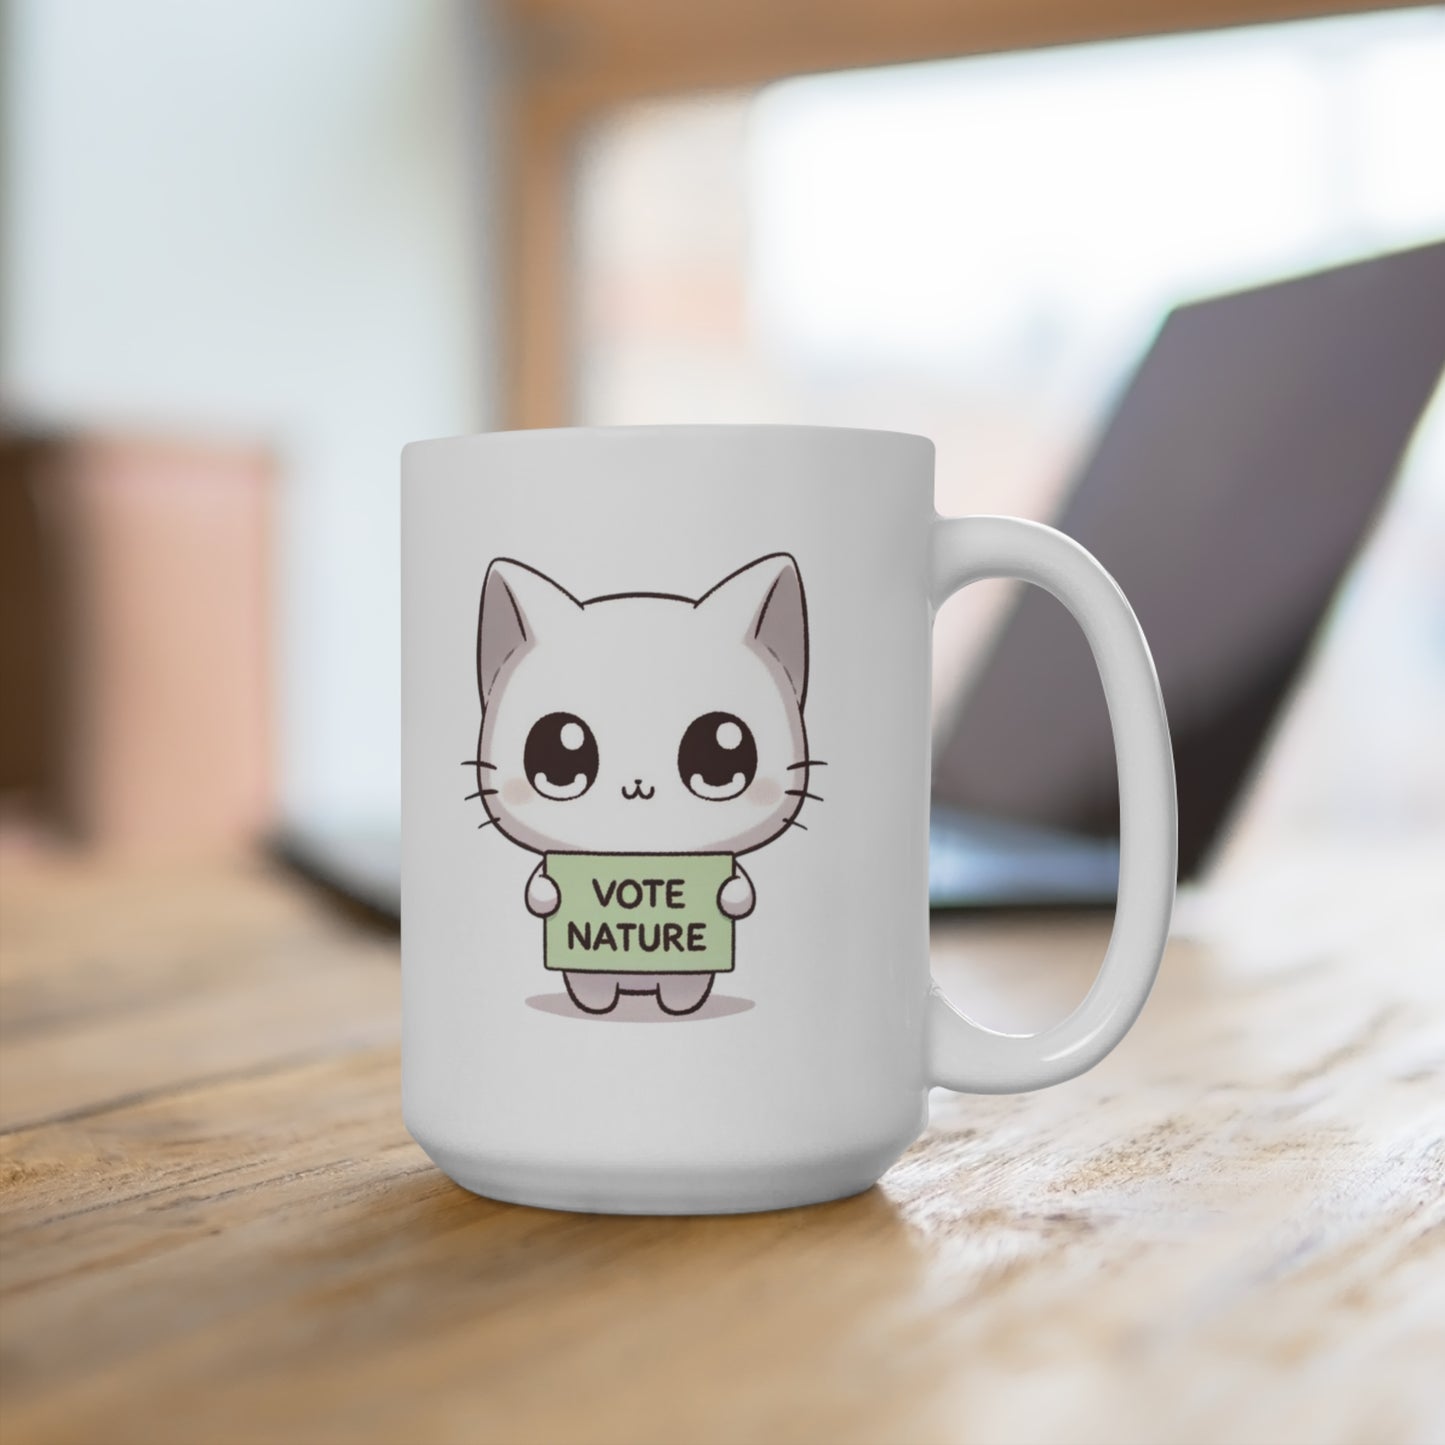 Inspirational Cute Cat Statement Coffe Mug (15oz): Vote Nature! Be a cute activist!